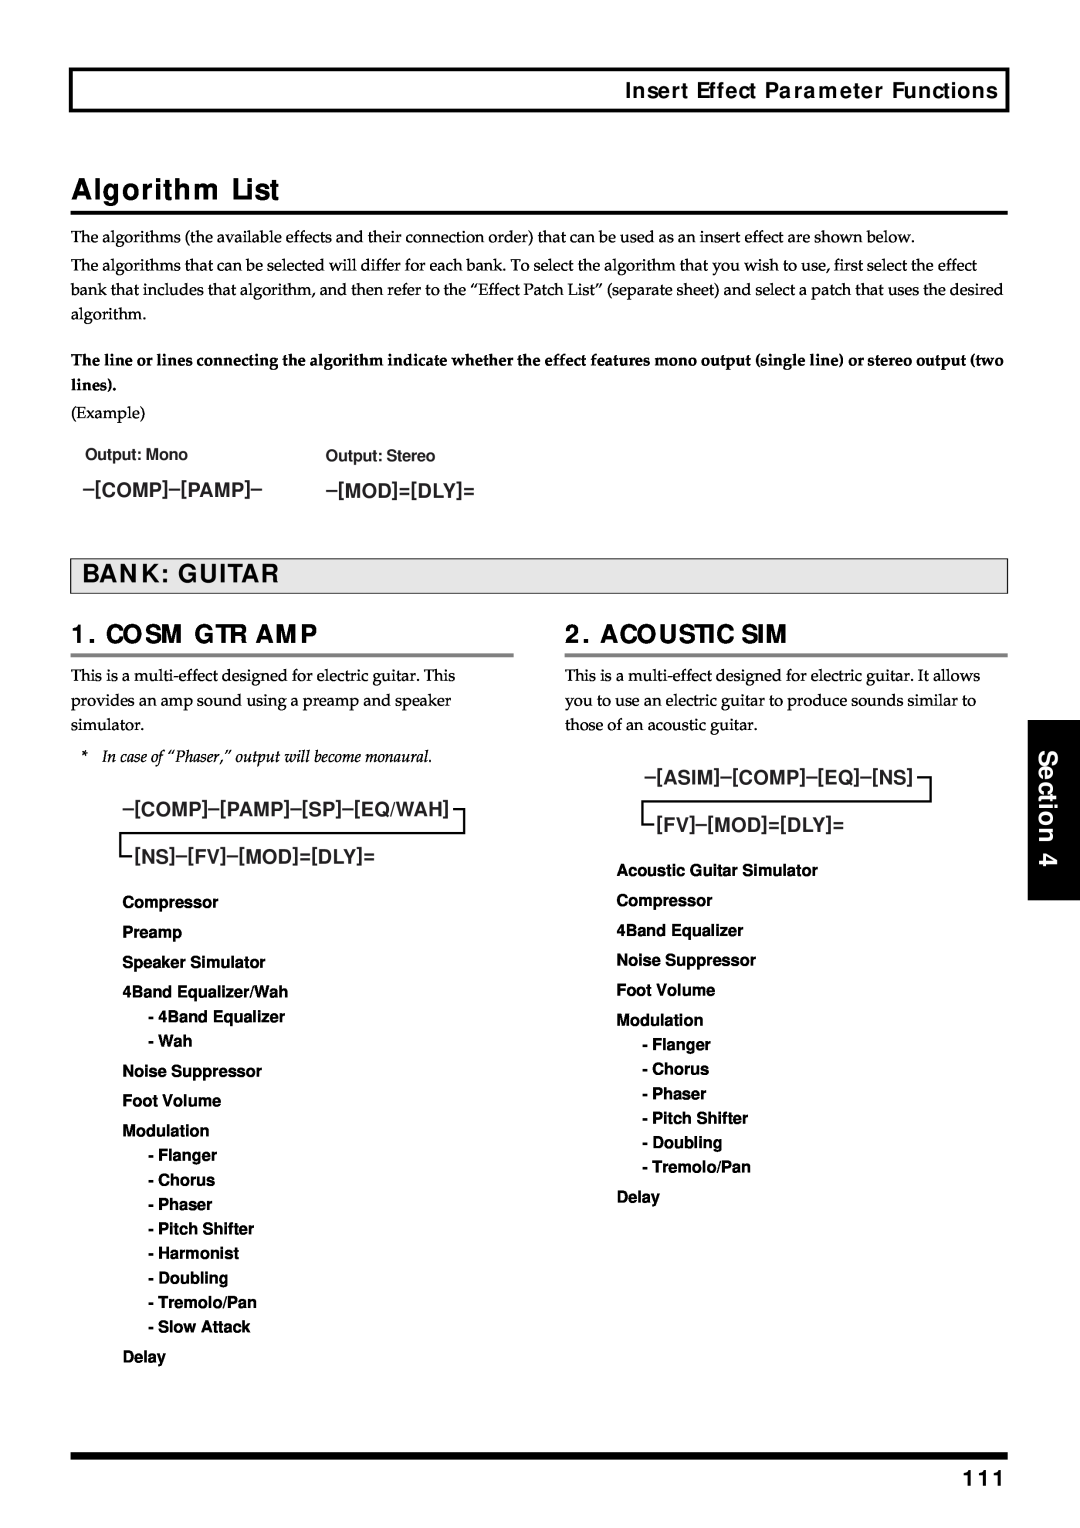 Roland BR-864 Algorithm List, Bank: Guitar, Cosm Gtr Amp, Acoustic Sim, Section, Comp–Pamp, Asim–Comp–Eq–Ns Fv–Mod=Dly= 